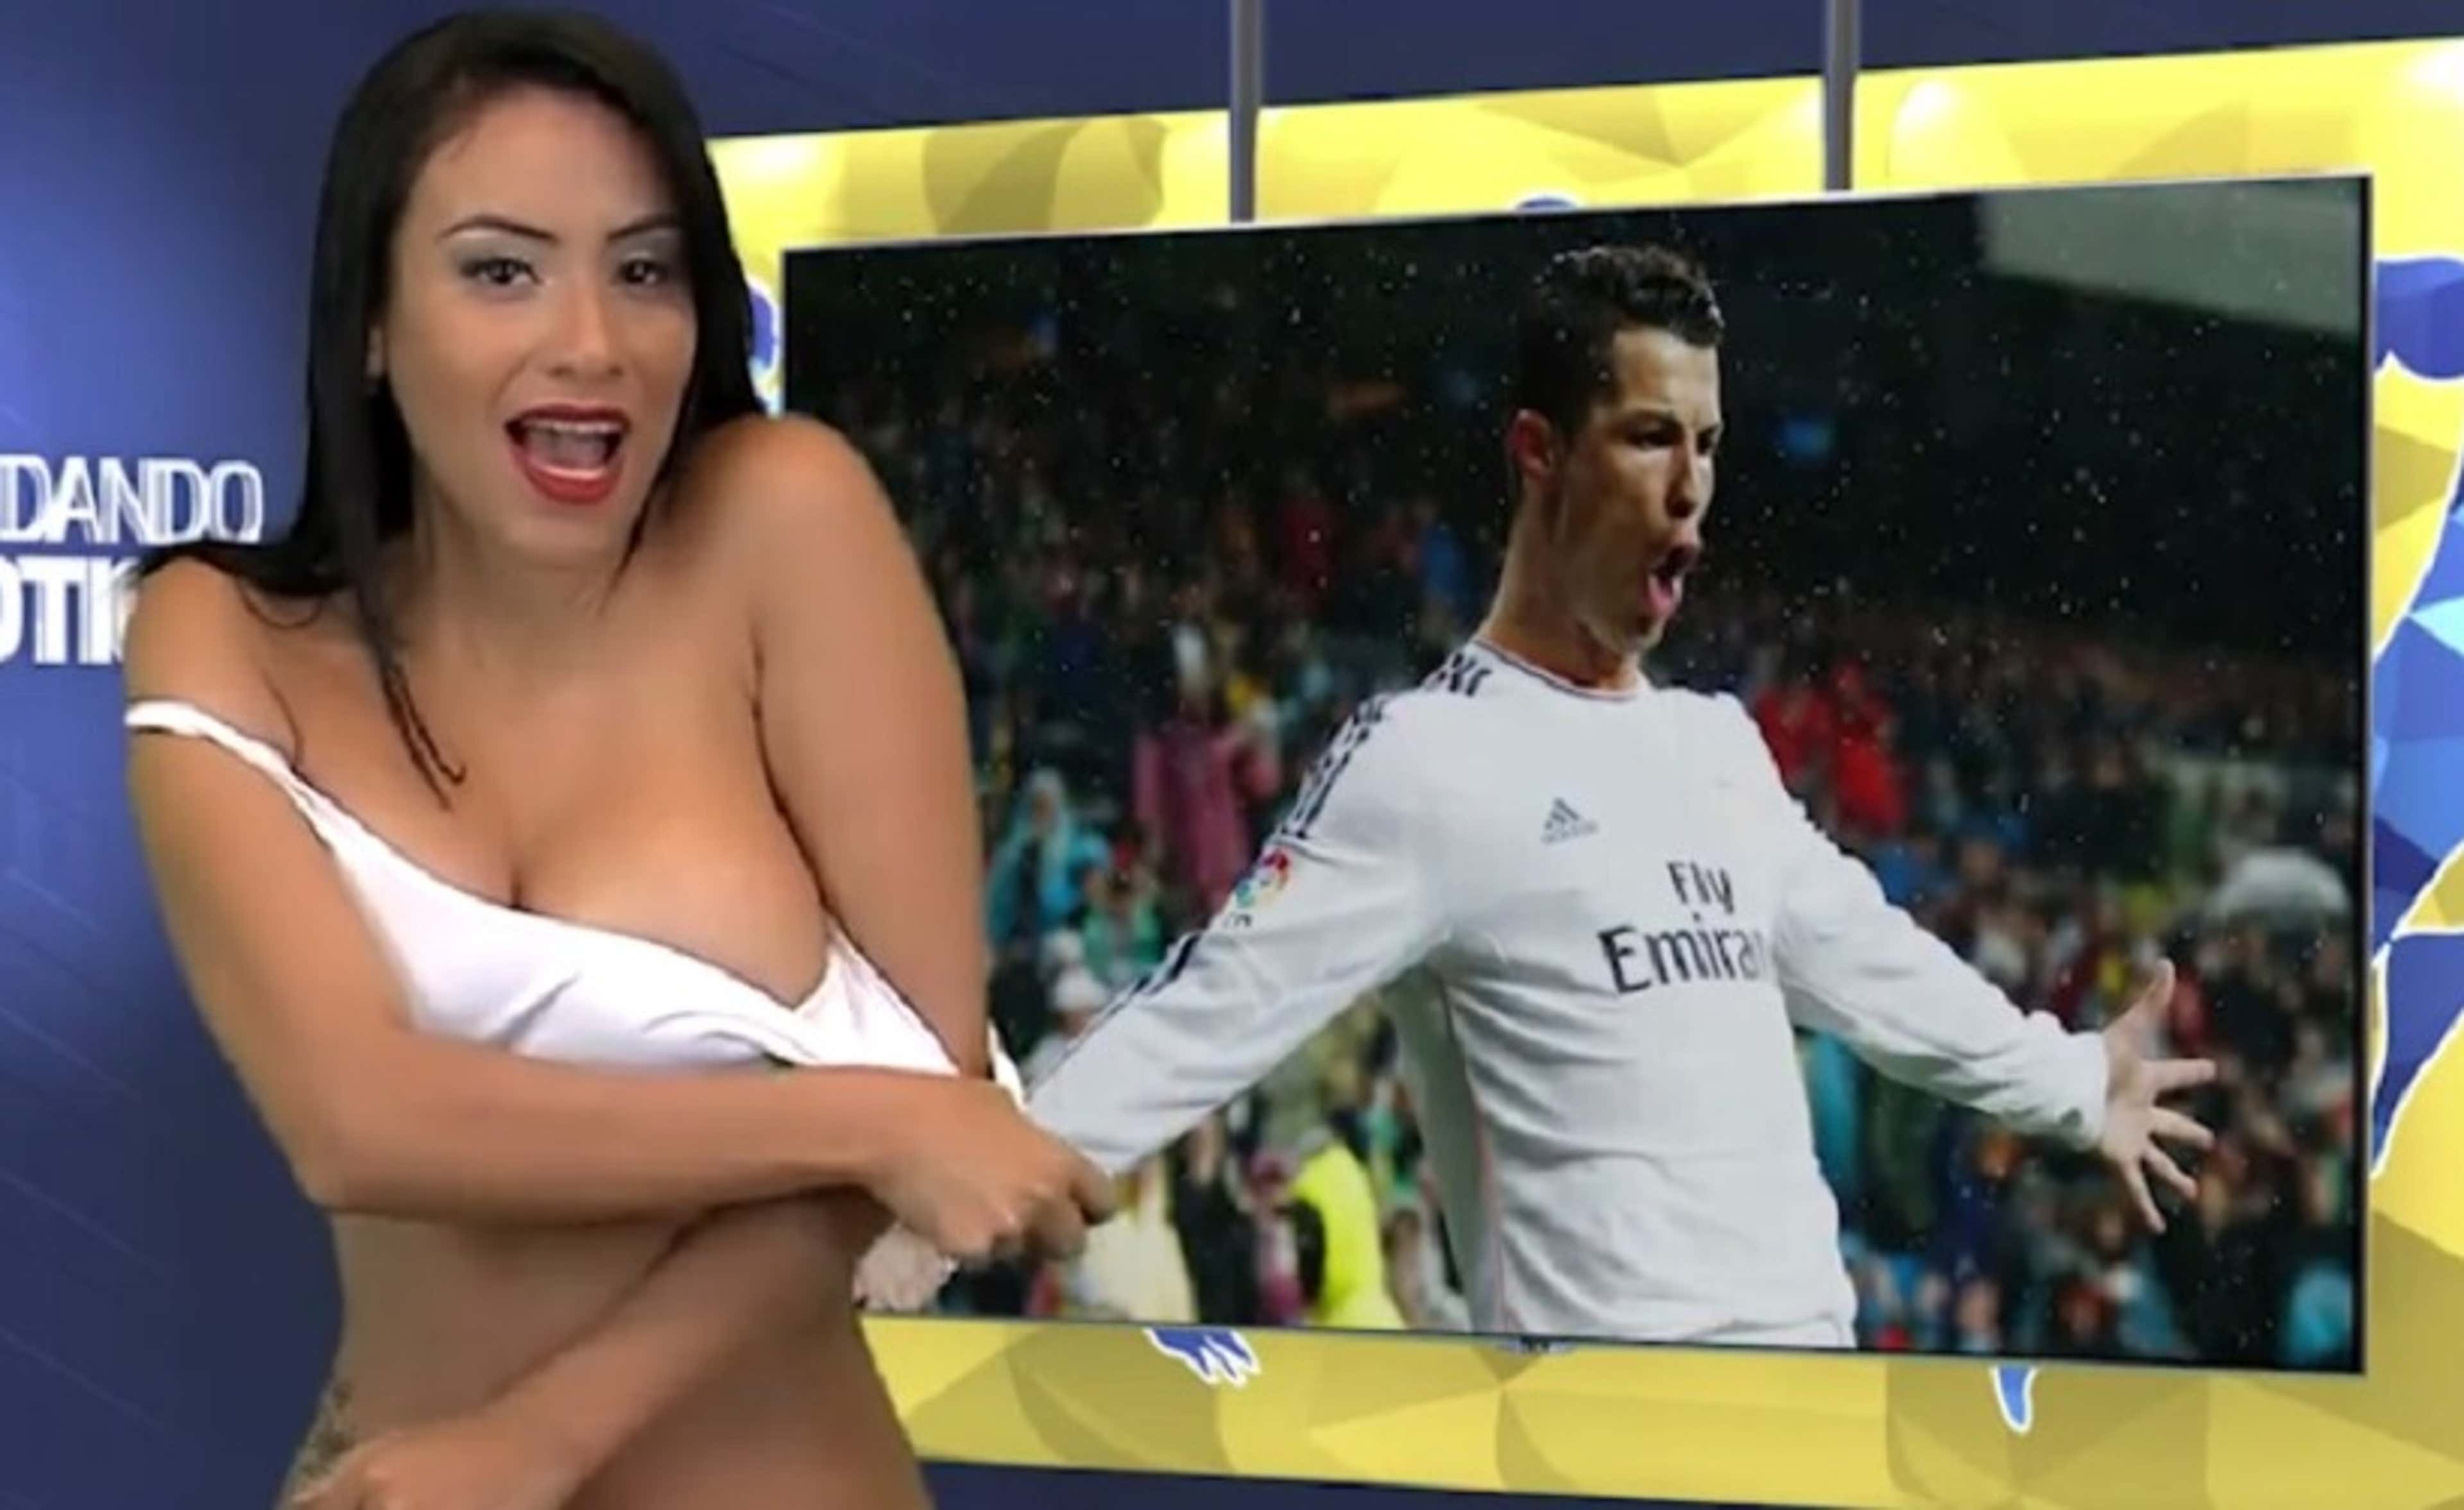 Una conductora se desnudó al aire hablando de Cristiano Ronaldo: mirá el  video  Argentina